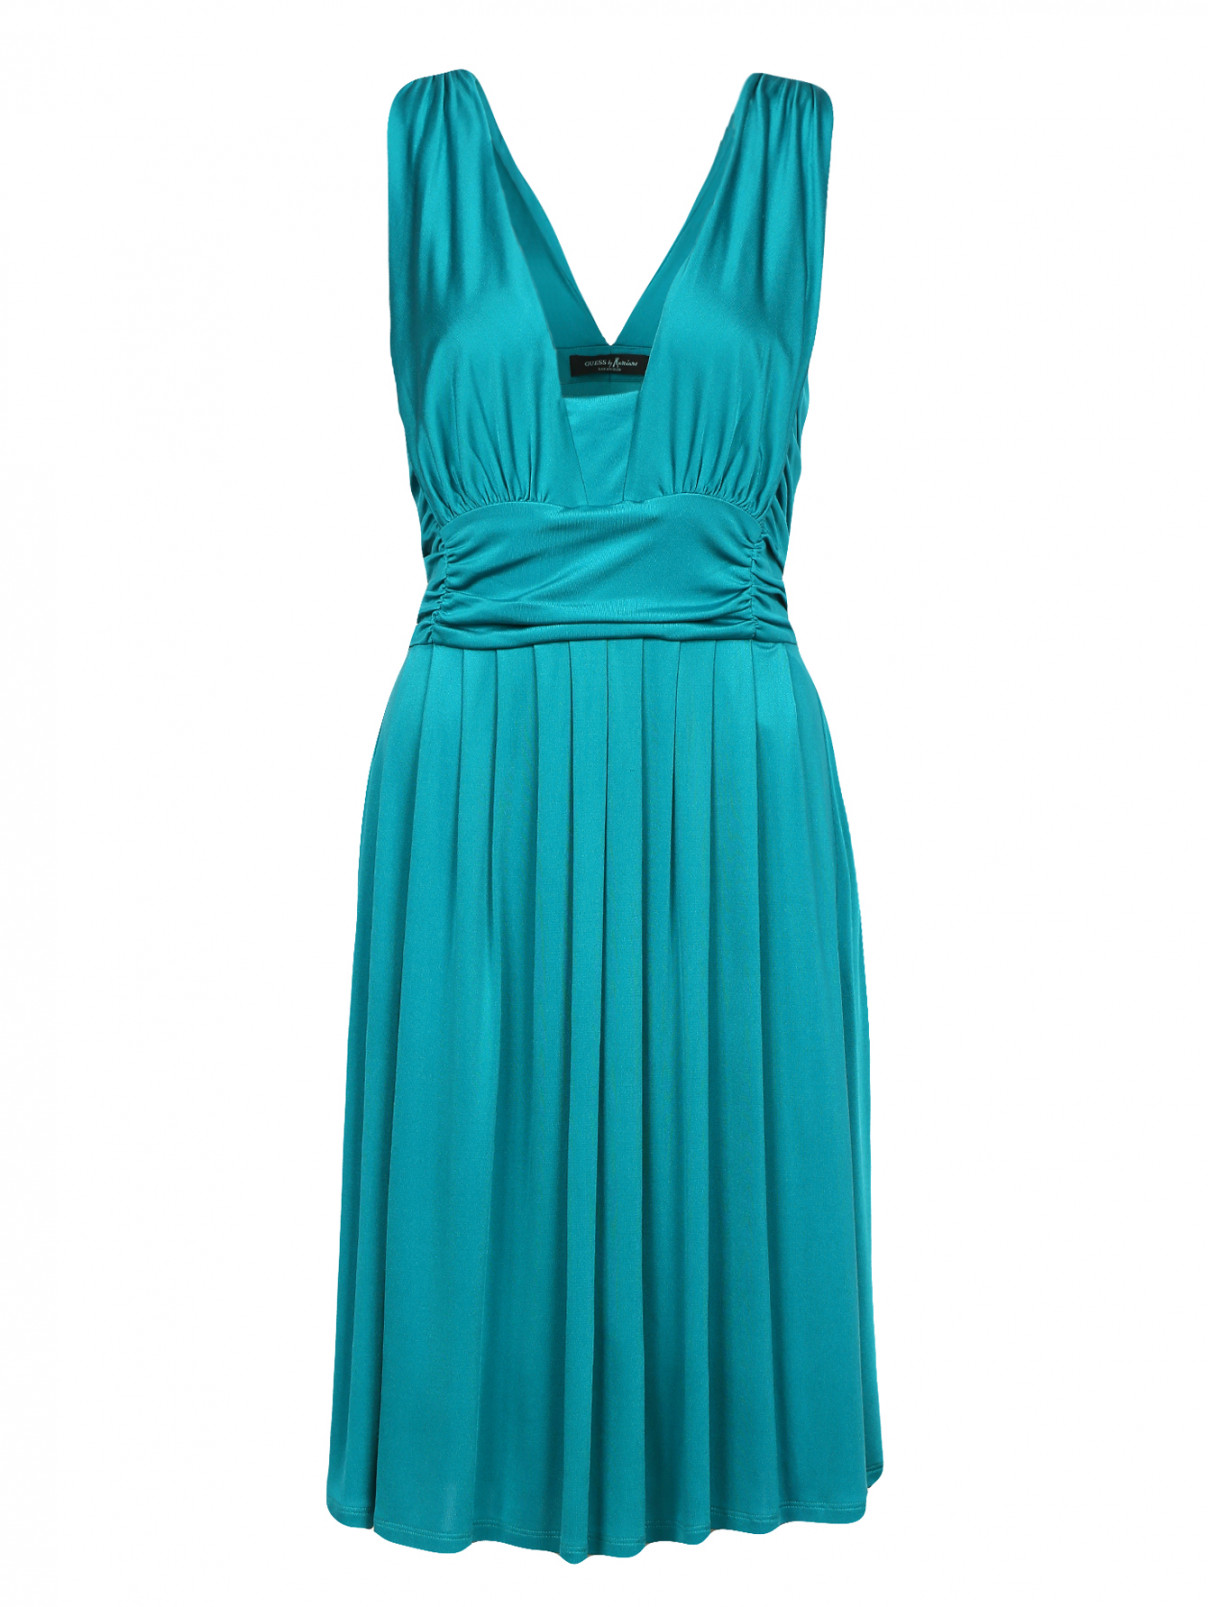 Трикотажное платье-мини из шелка с драпировками Guess by Marciano  –  Общий вид  – Цвет:  Зеленый